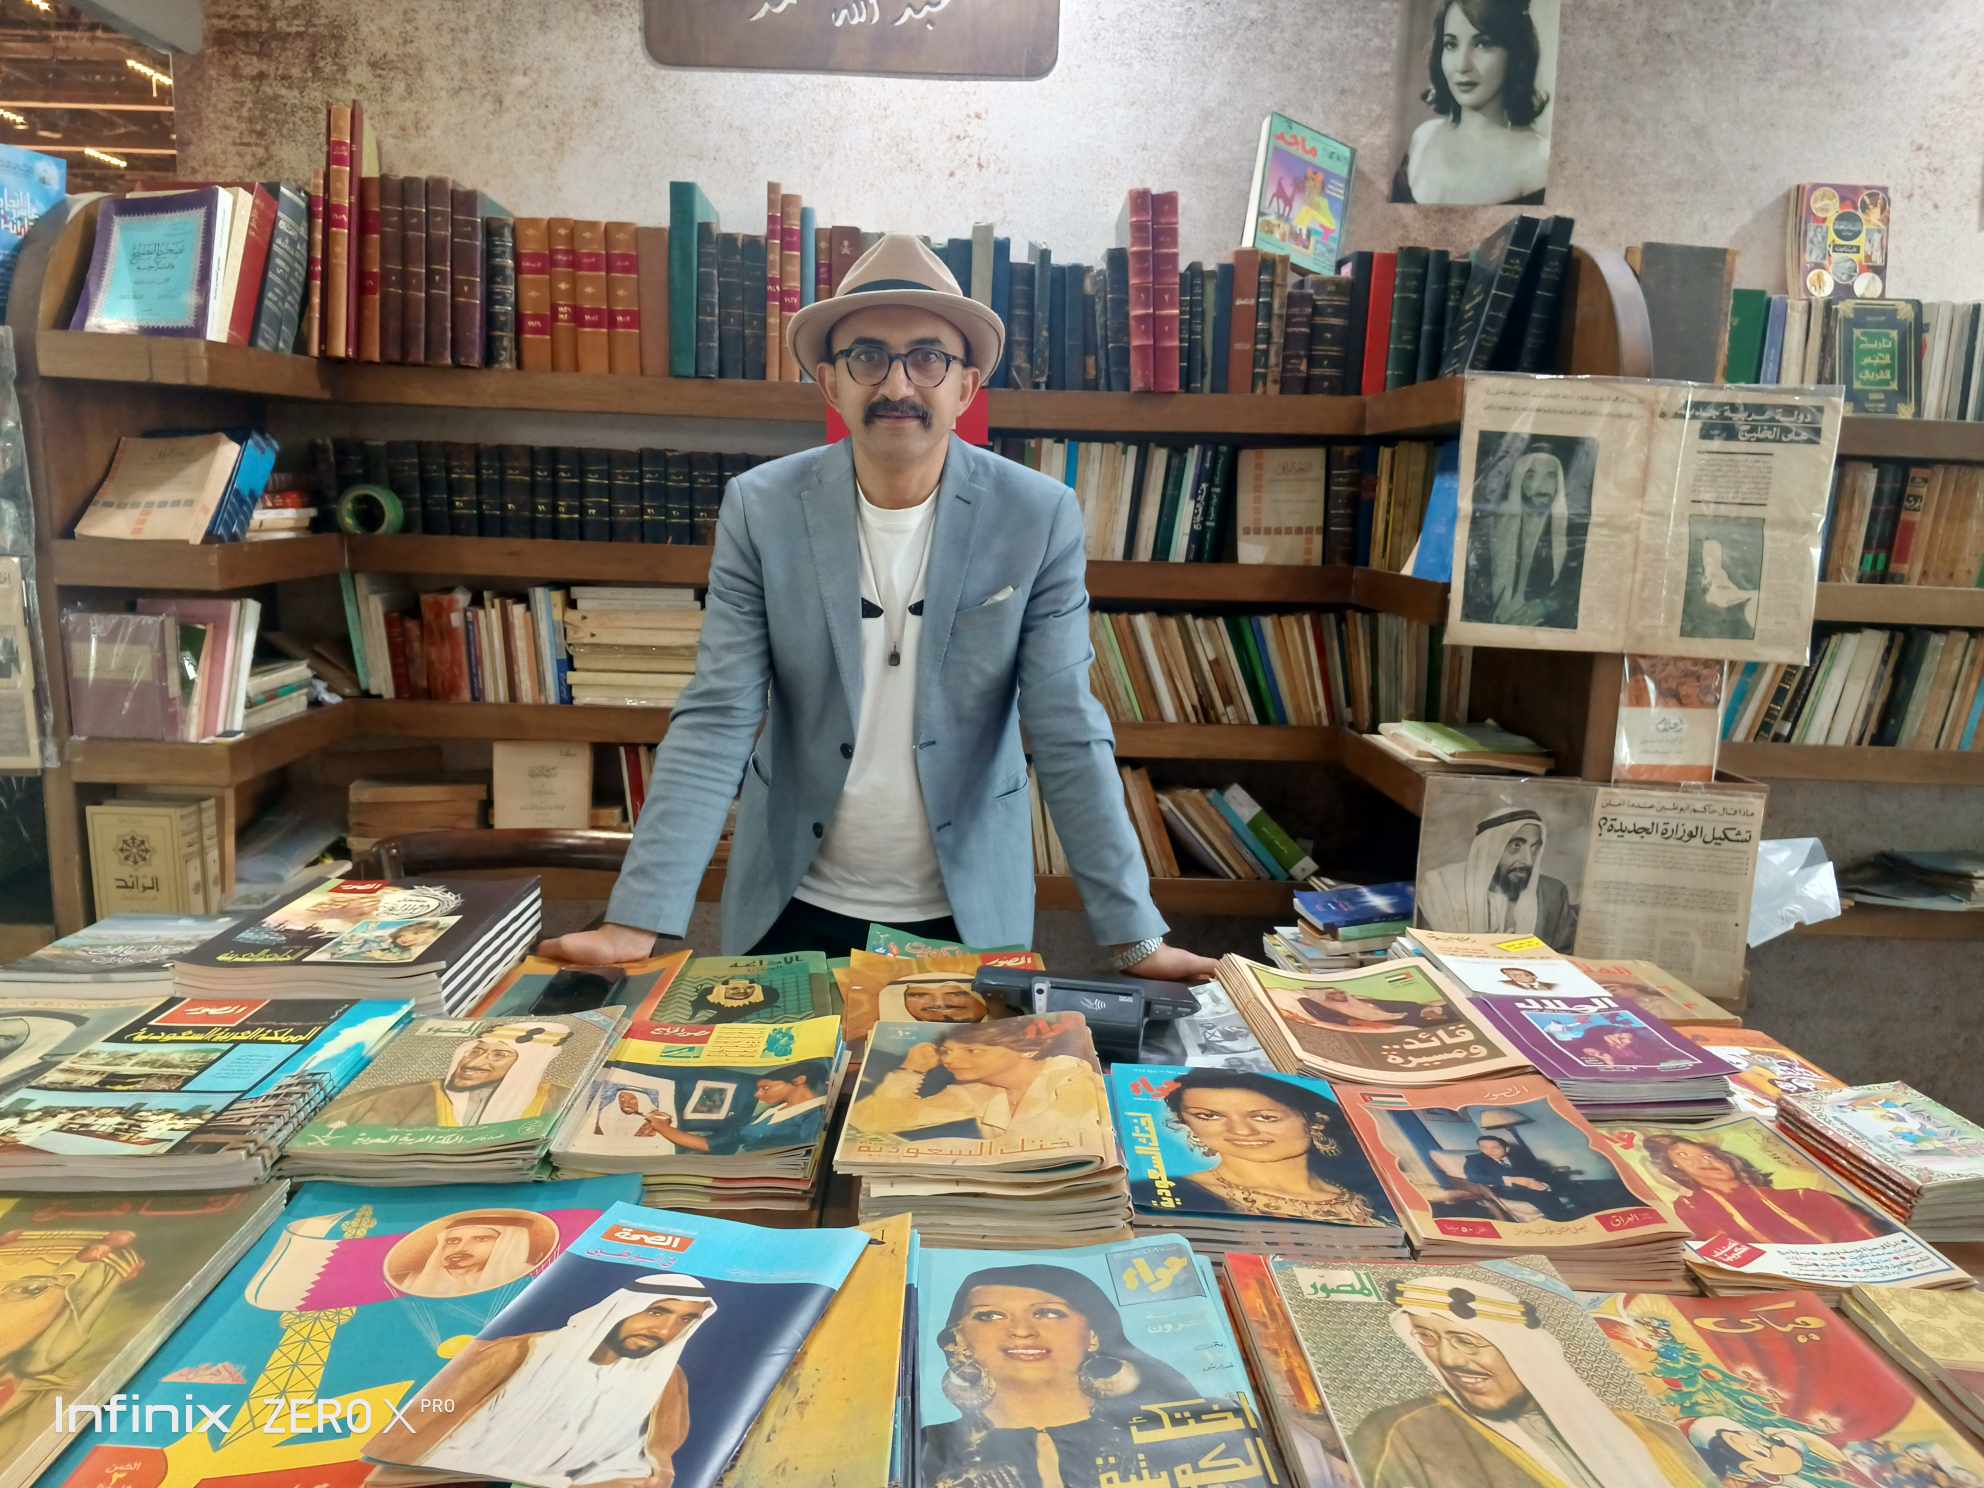 سور الأزبكية في معرض أبوظبي للكتاب.. أوراق برائحة الماضي | فيديو وصور